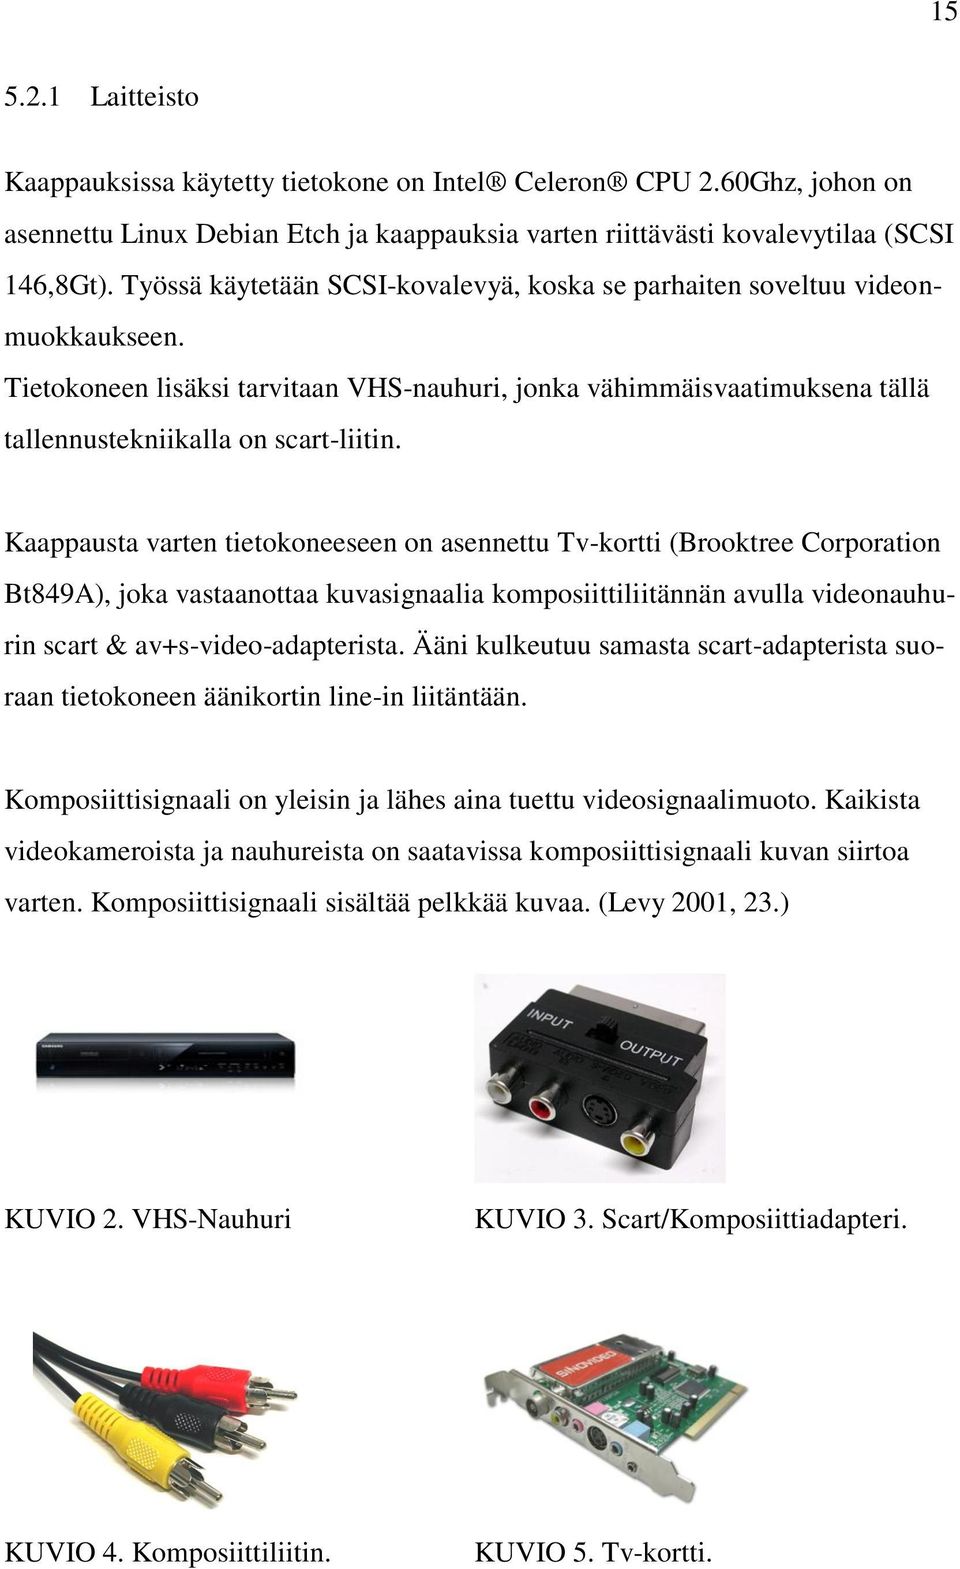 Kaappausta varten tietokoneeseen on asennettu Tv-kortti (Brooktree Corporation Bt849A), joka vastaanottaa kuvasignaalia komposiittiliitännän avulla videonauhurin scart & av+s-video-adapterista.